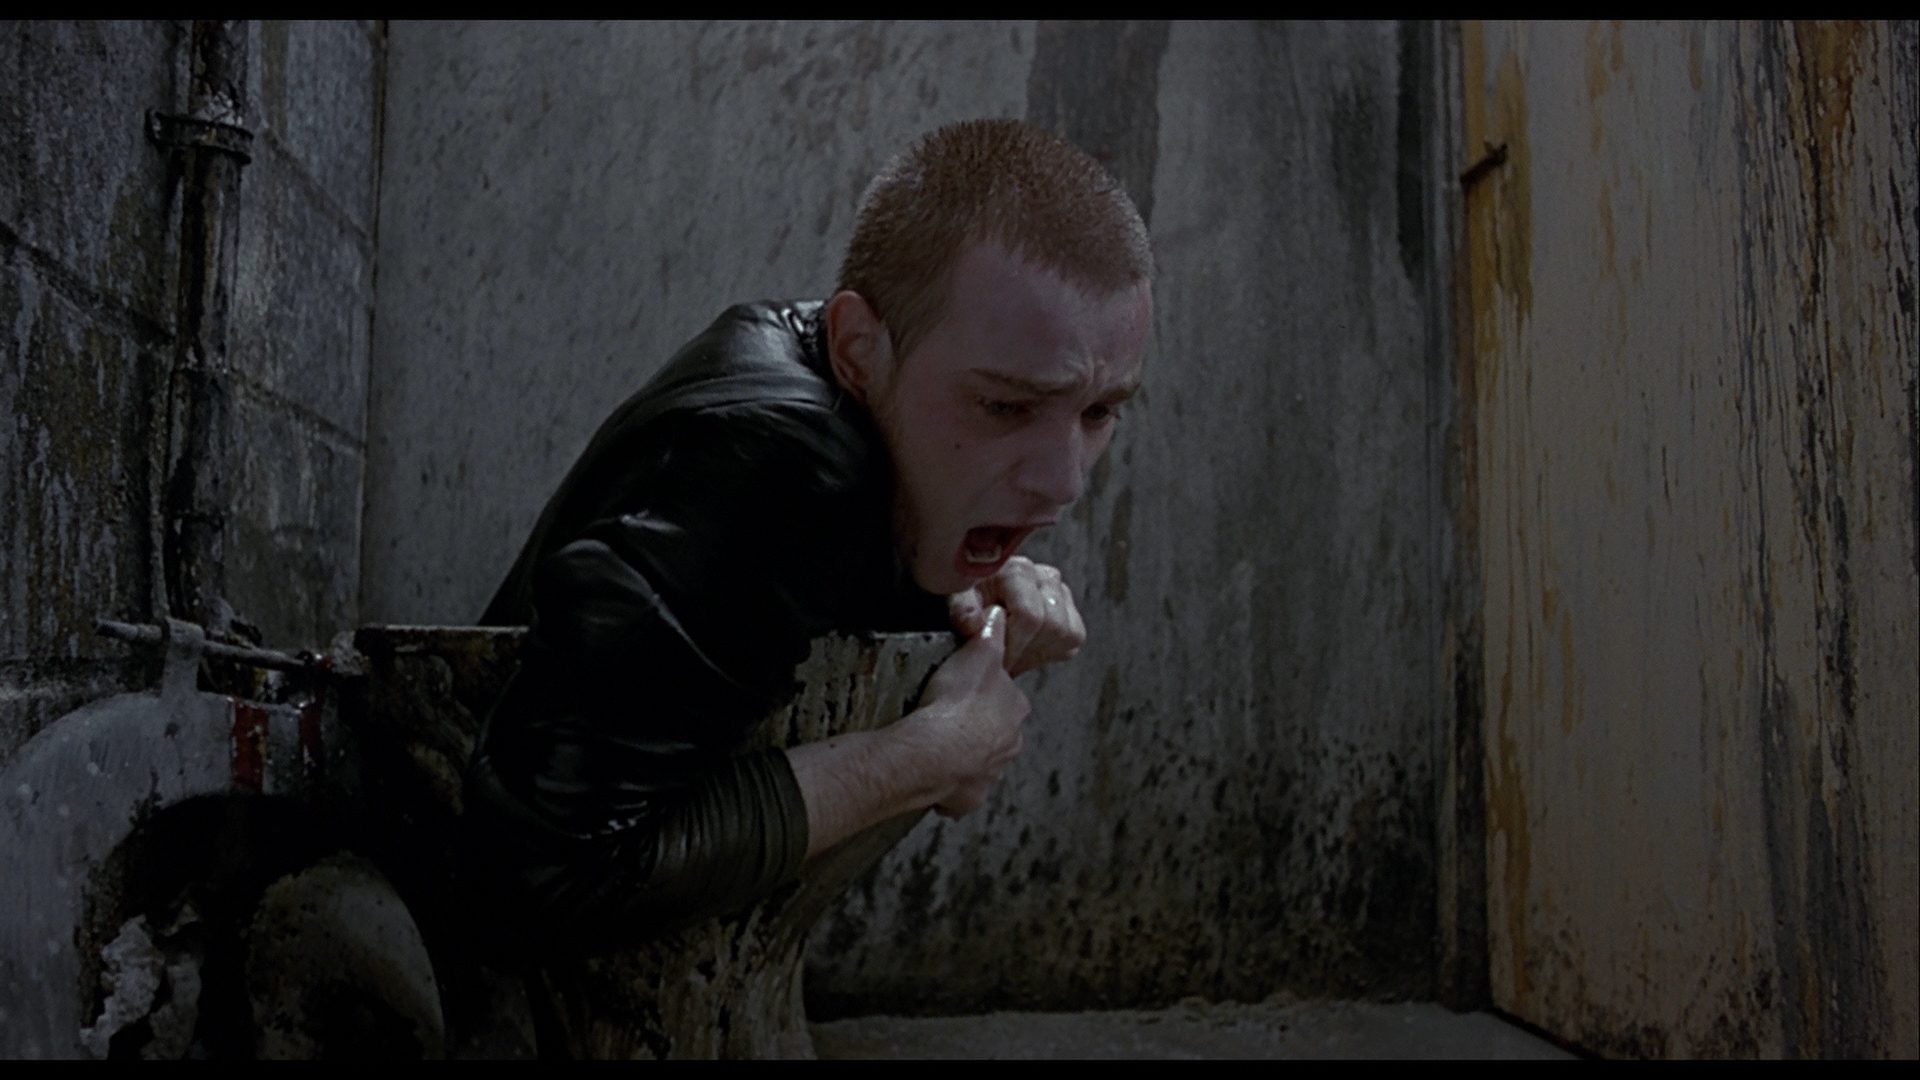 Rent (incarné par Ewan McGregor) sort d'une cuvette de toilettes crasseuse. Image issue du film Trainspotting réalisé par Danny Boyle.